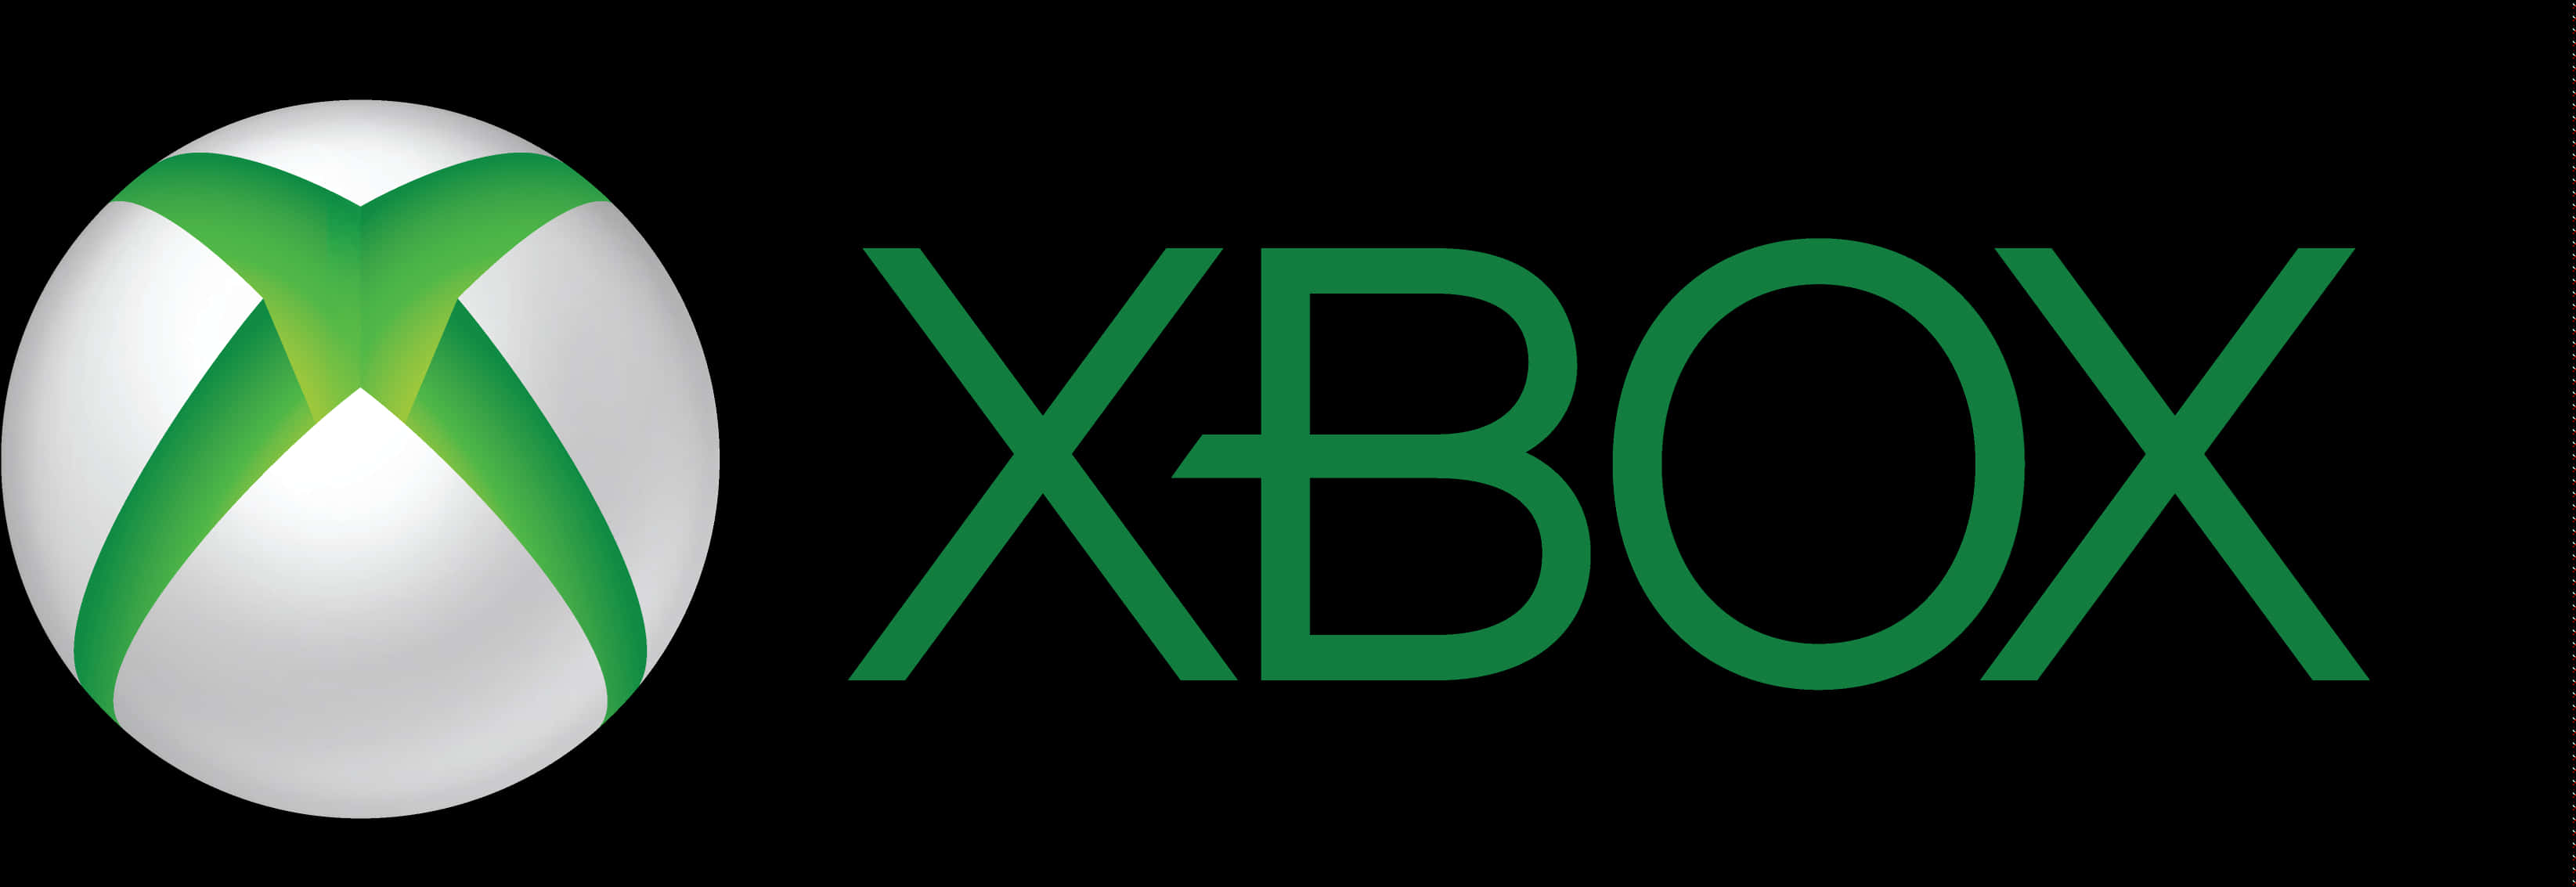 Xbox Logo Greenand White